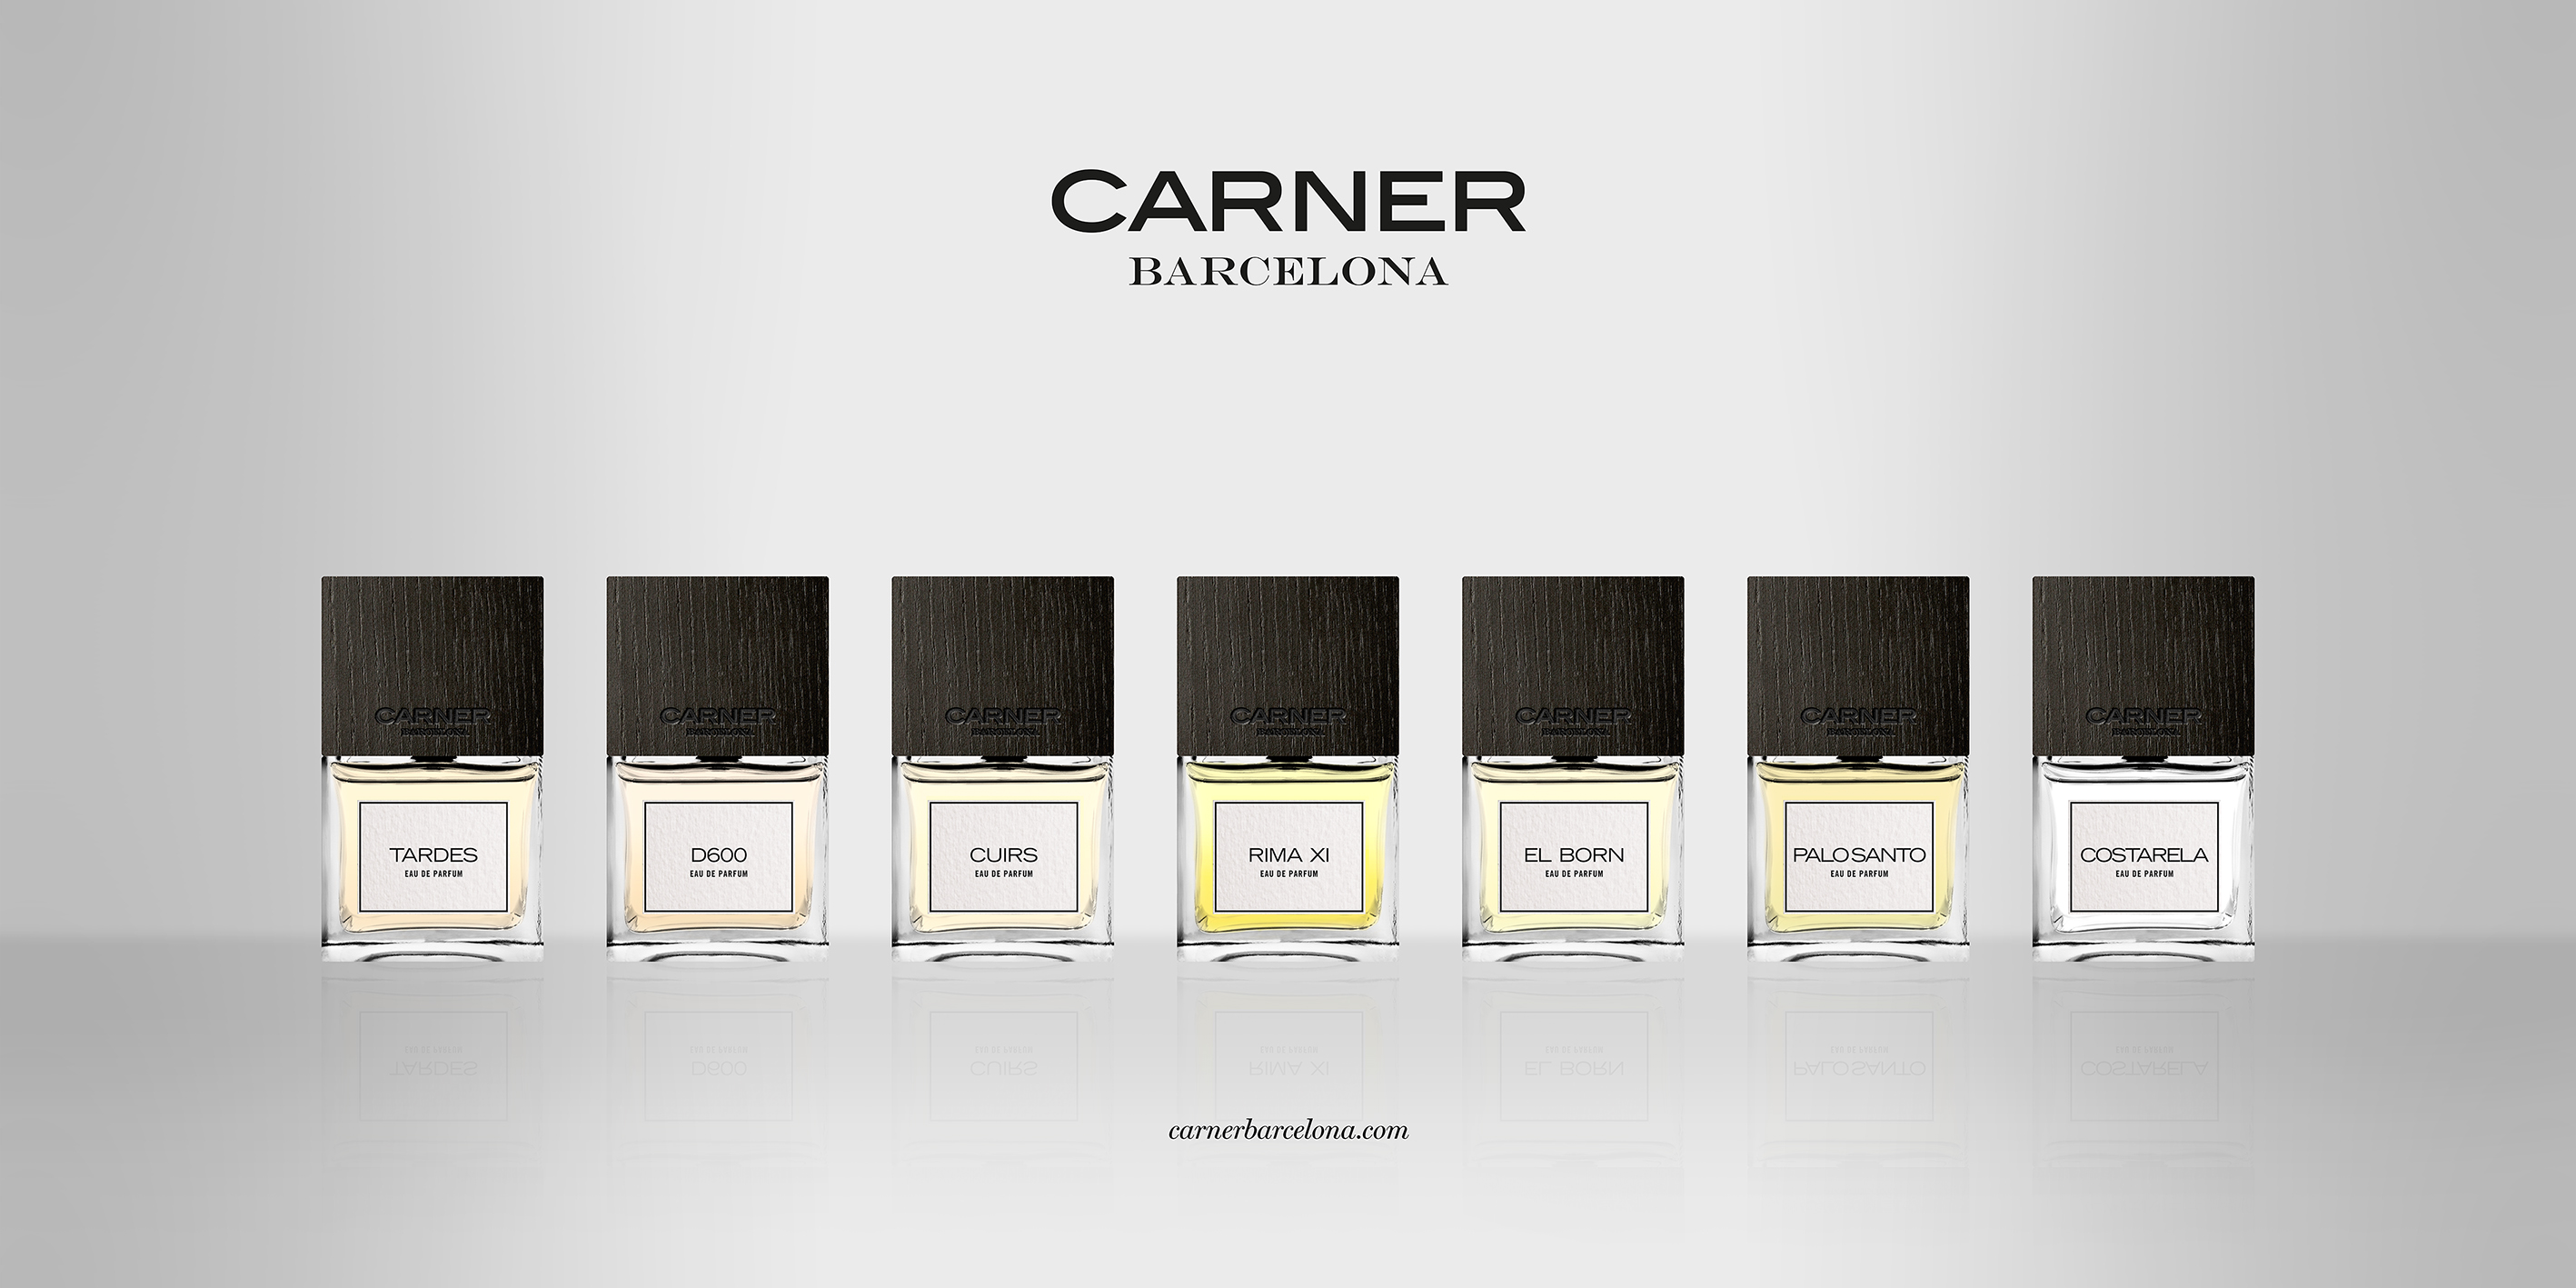 Ликуйте парфюмоманьяки-испанский селективный бренд Carner Barcelona теперь в израильском DUTY FREE!